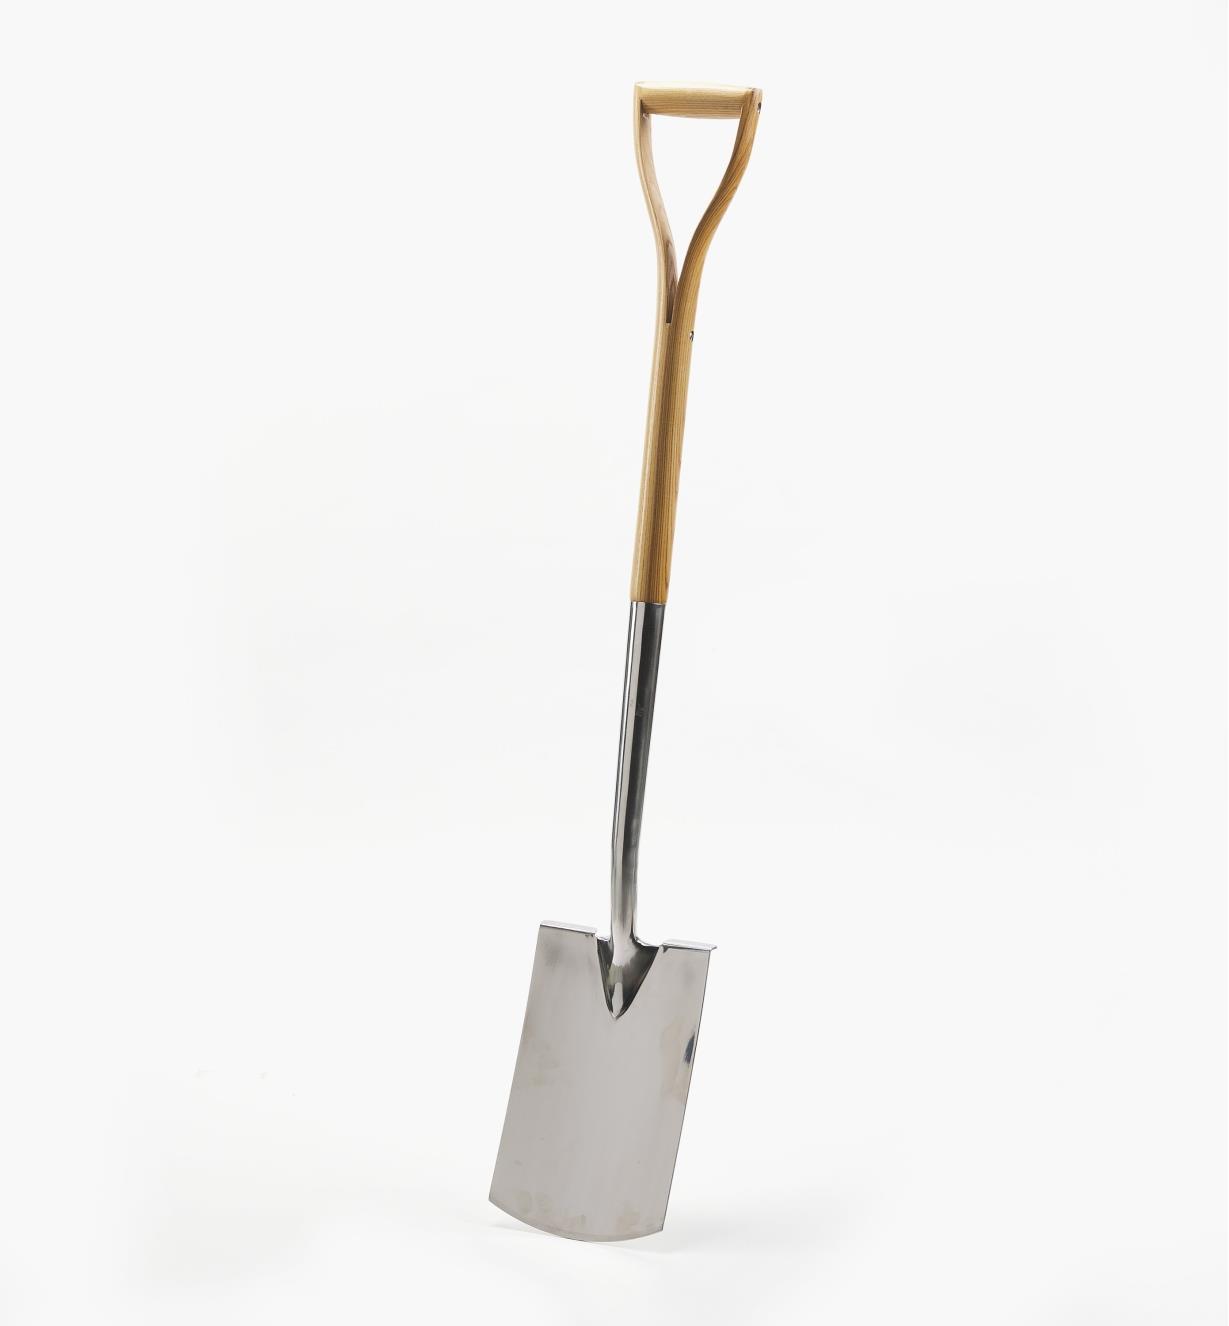 PG160 - Stainless-Steel Wood-Handled Digging Spade